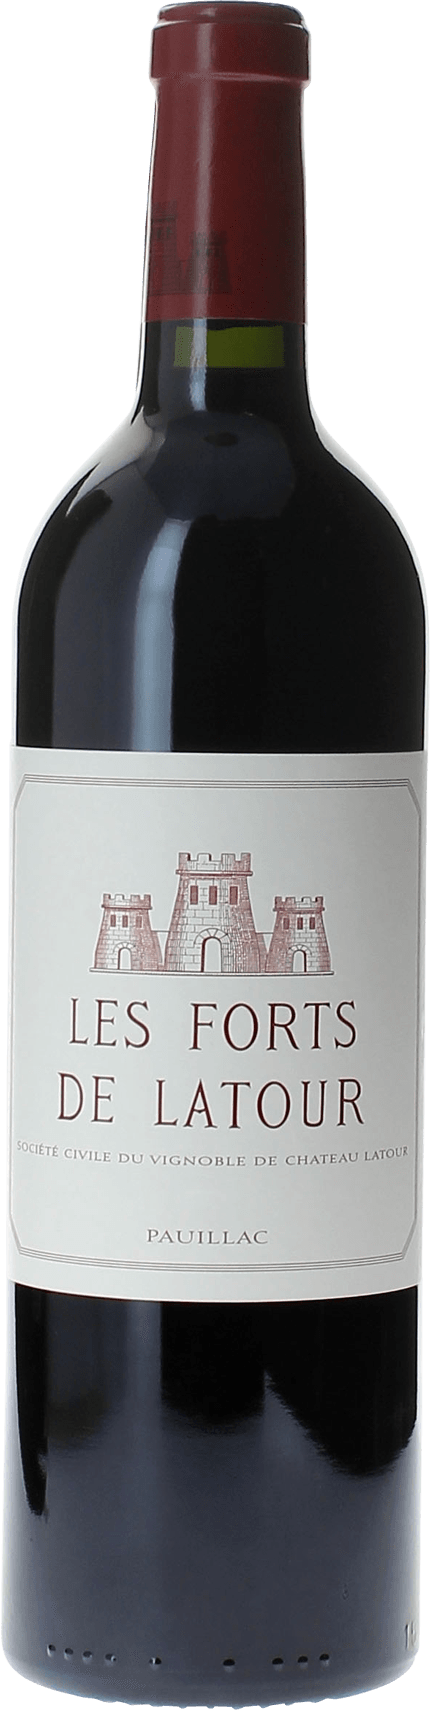 Les forts de latour 1970 2me vin de LATOUR Pauillac, Bordeaux rouge